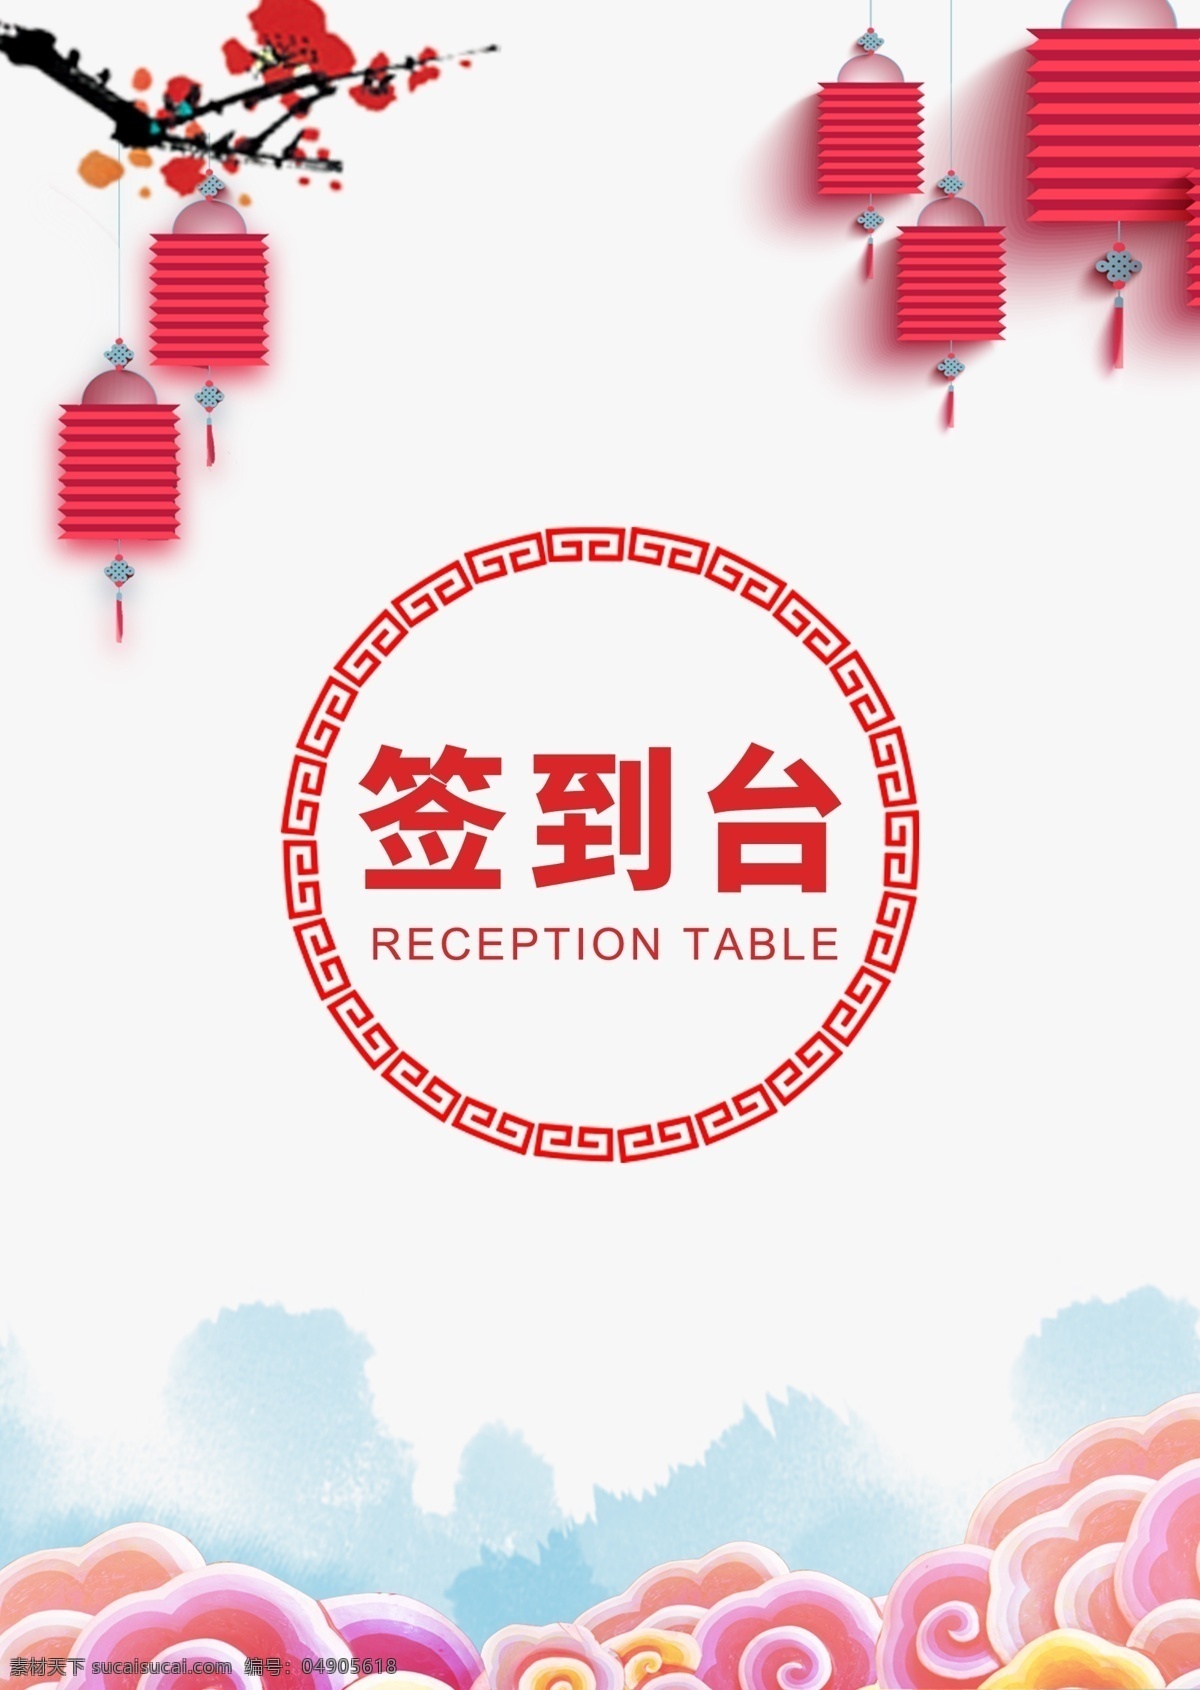 简约 中国 风 活动 签到 台 板 桌牌 模板 设计模板 名片 中国风 签到台 签到板 手绘风格 新年活动 手绘